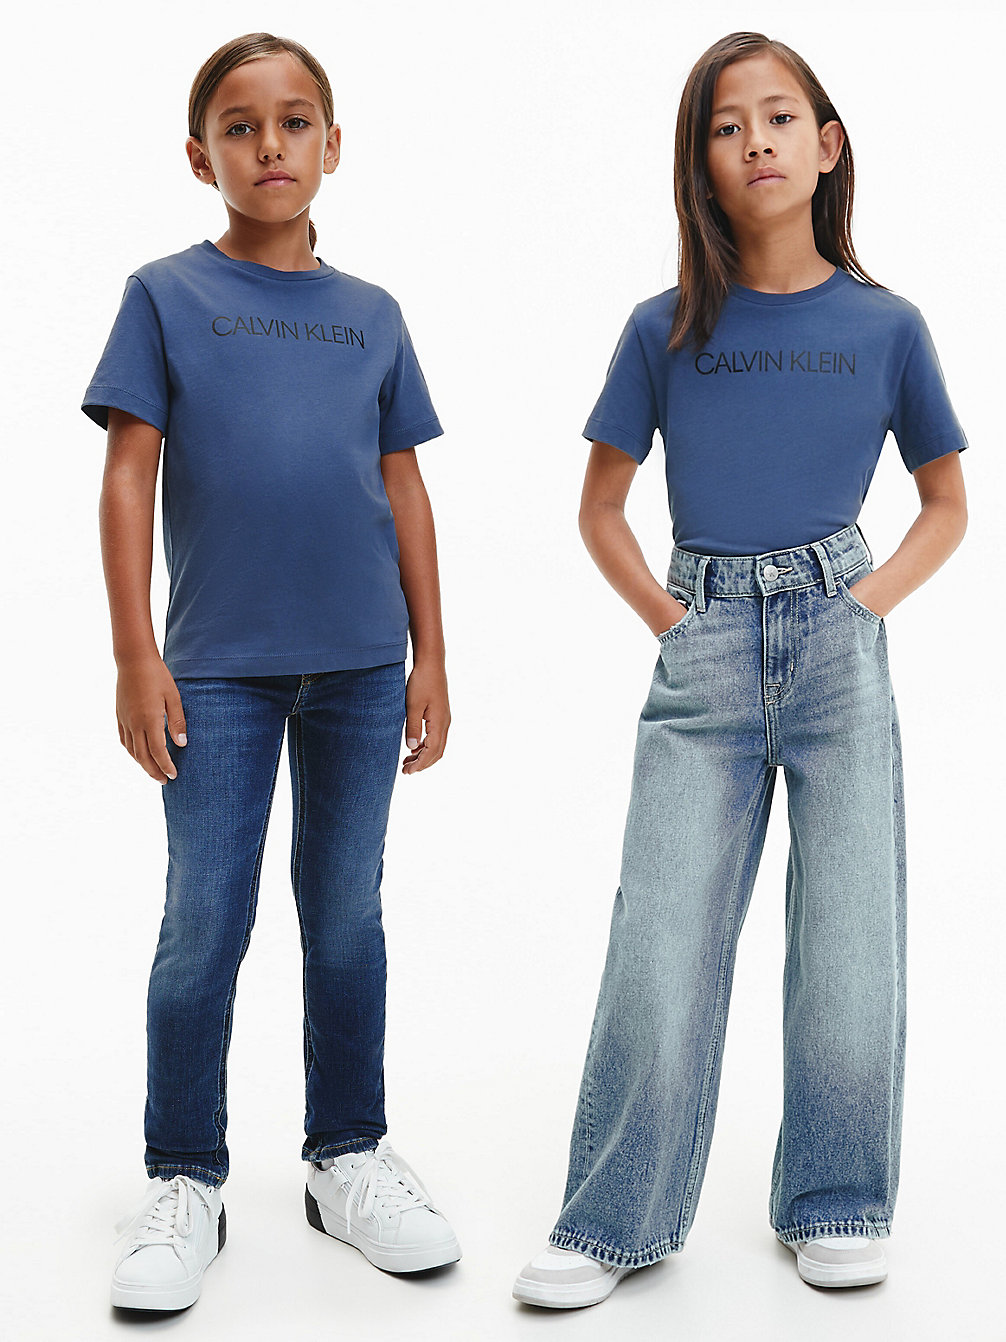 AEGEAN SEA Kids Organic Cotton Logo T-Shirt undefined kids unisex Calvin Klein